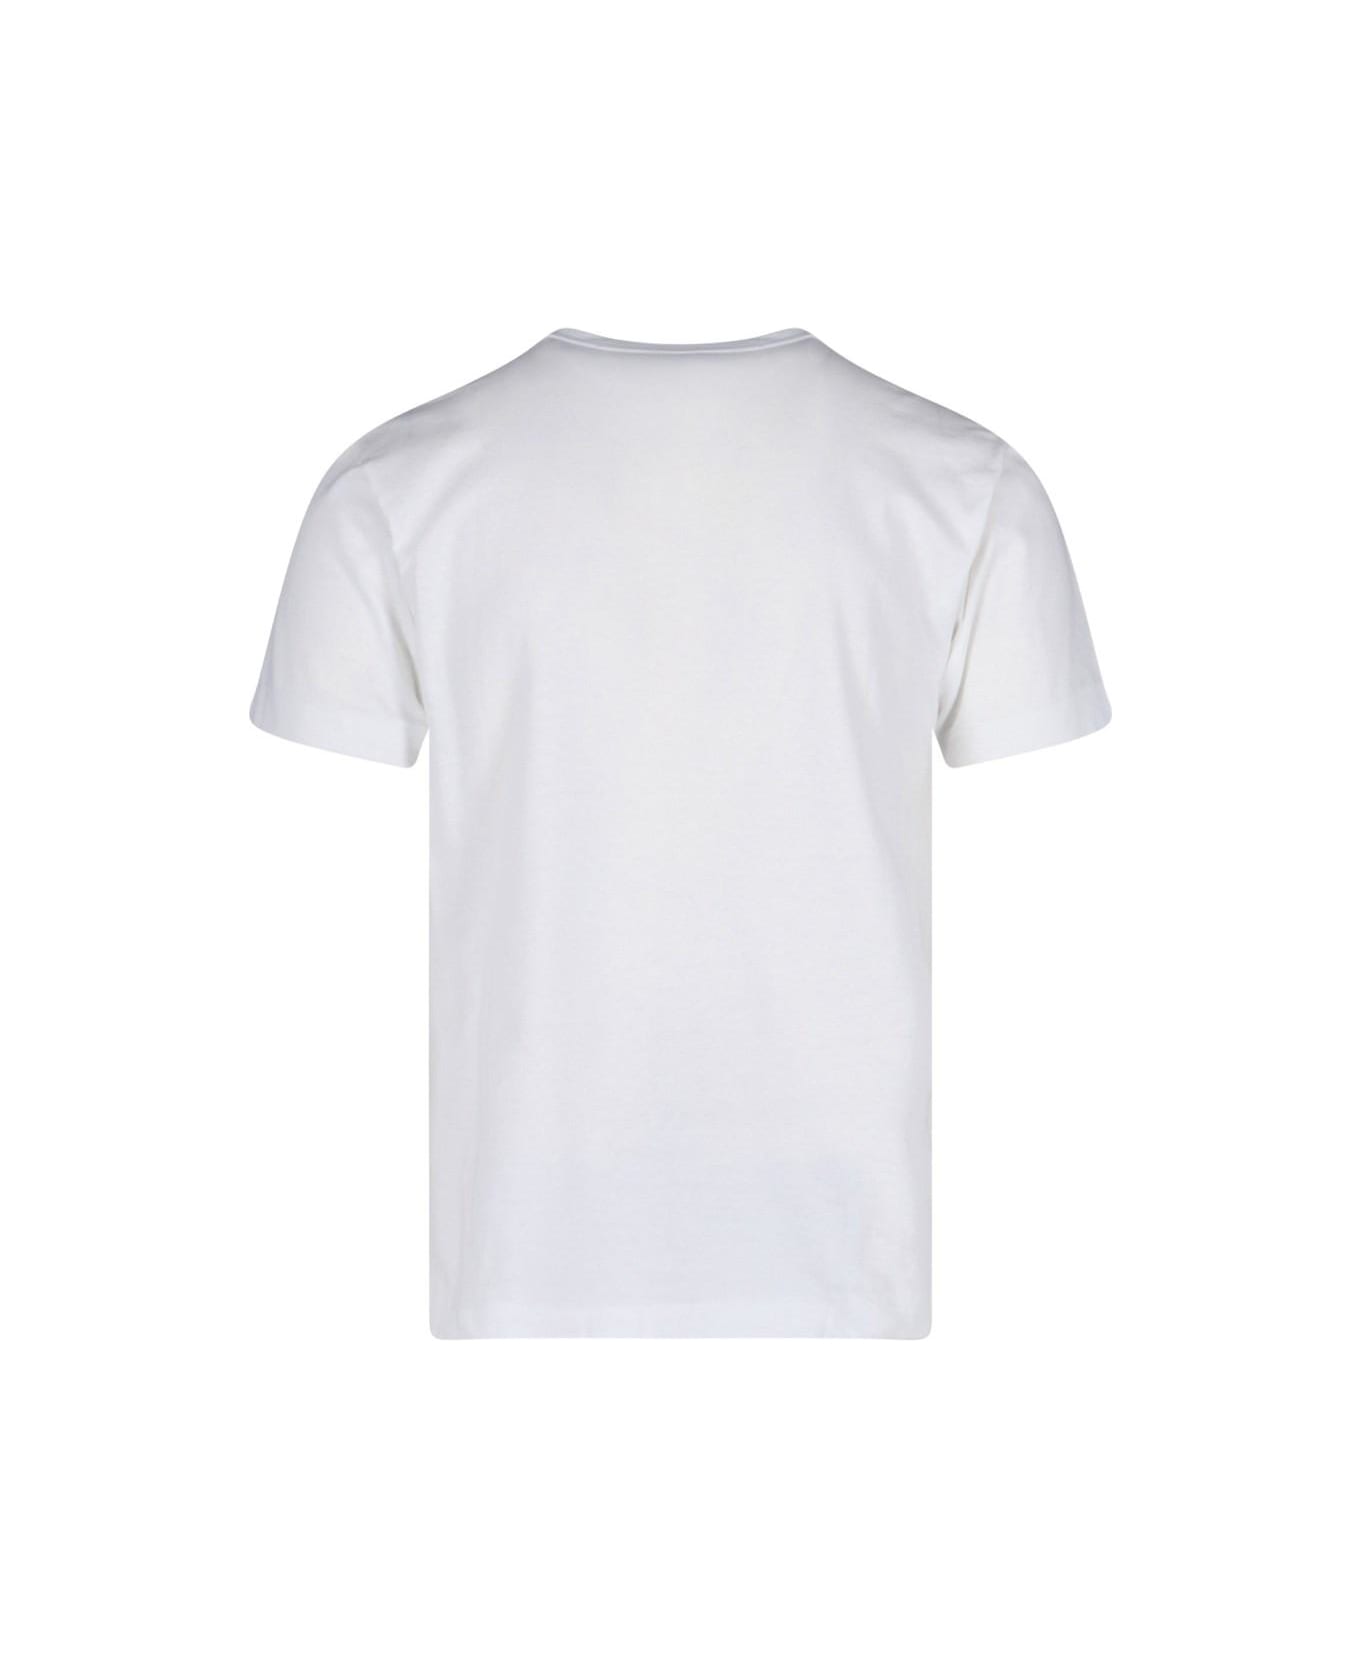 Comme des Garçons Play Double Logo T-shirt - White シャツ